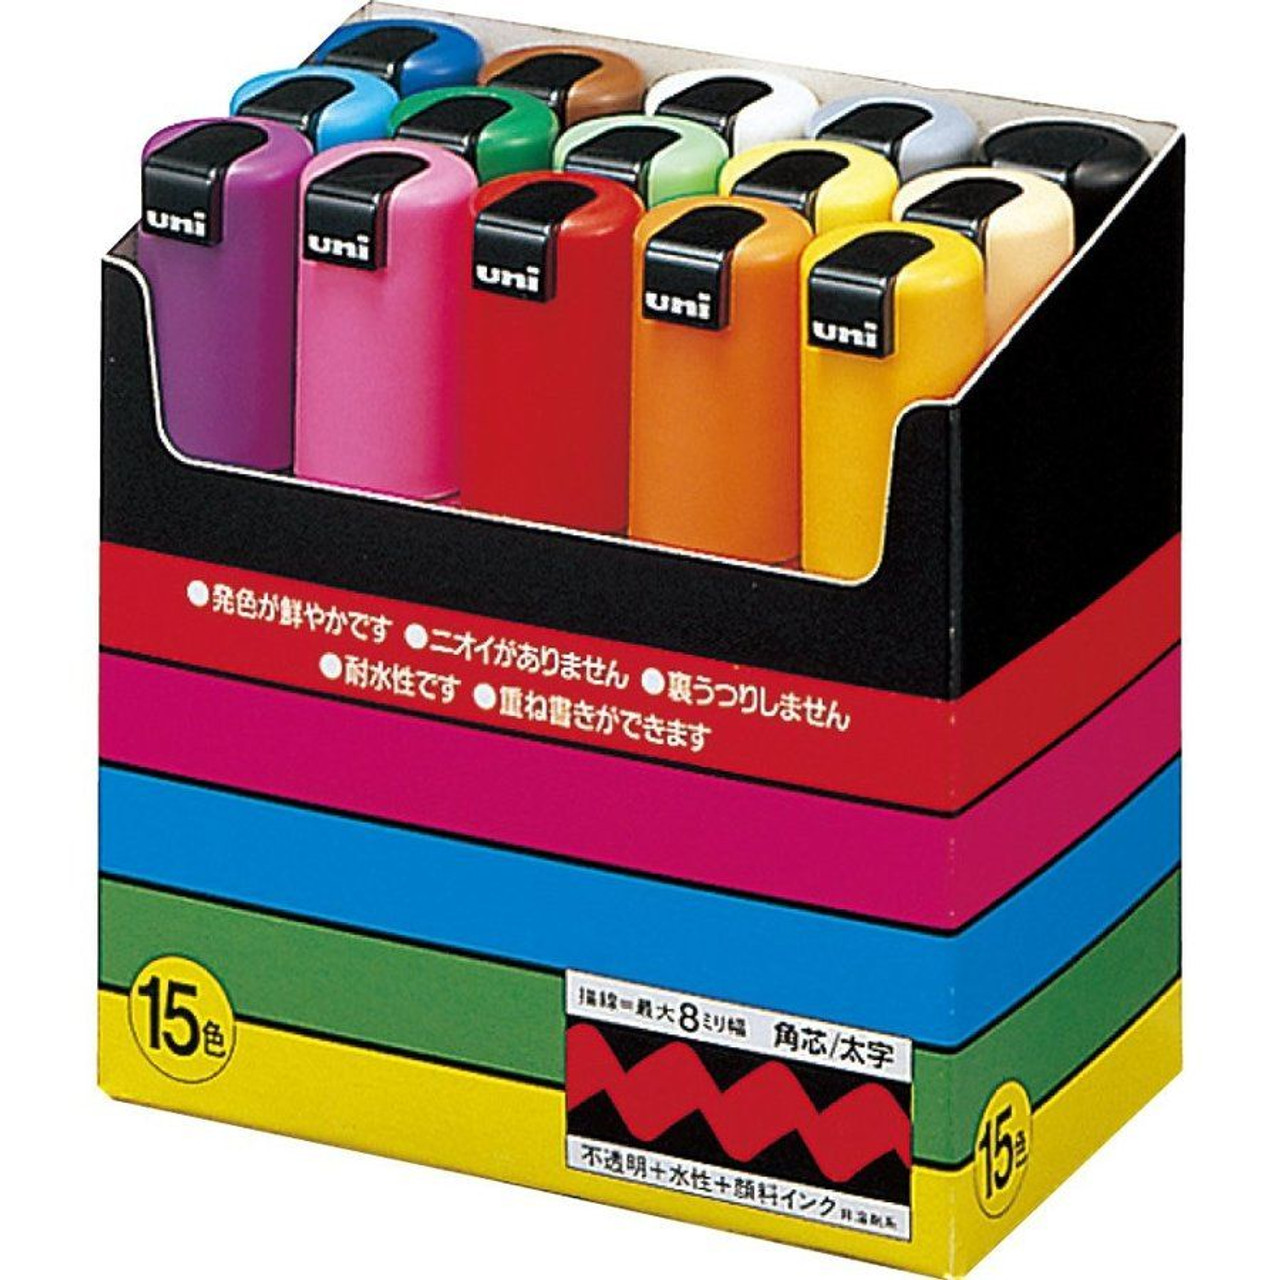 Mitsubishi Pencil uni POSCA Bold square core 15 color set